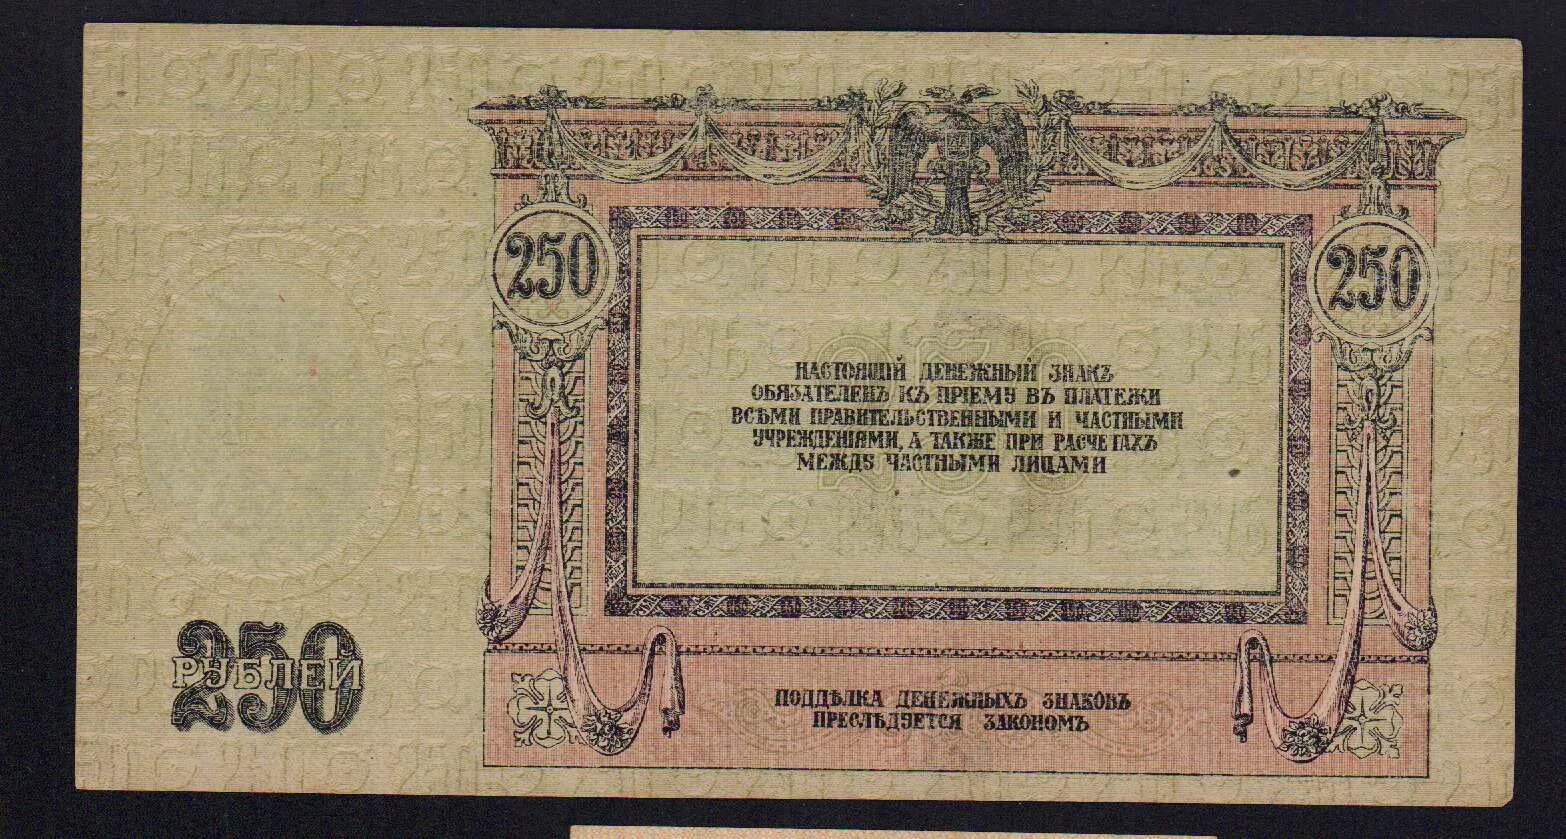 250 Рублей 1918. 5 000 Рублей 1918. Пластина медная 5 рублей 1918. 10 000 Рублей 1918 года.